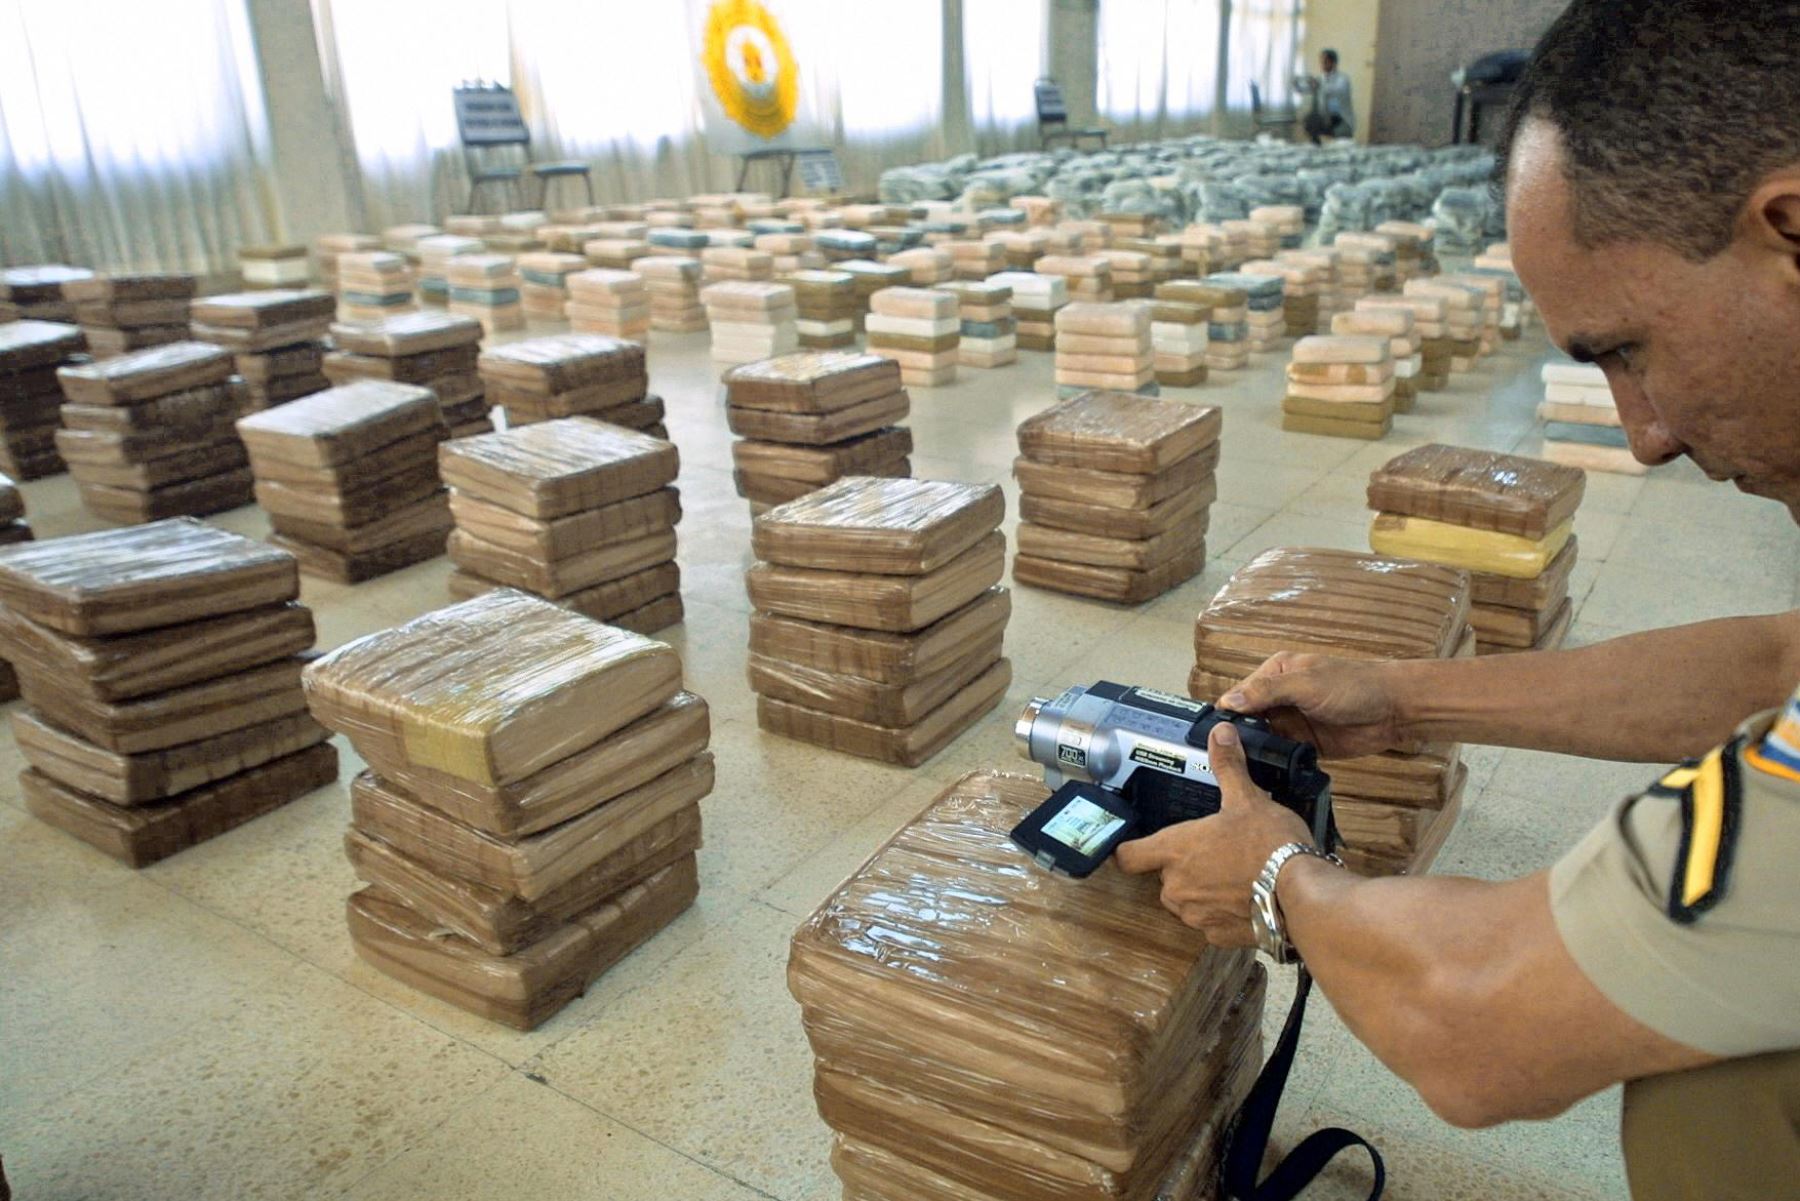 Se trata de más de 5,200 kilogramos de cocaína y más de 7,700 kilogramos de marihuana por un valor conjunto en el mercado clandestino de alrededor de 228 millones de dólares. Foto: AFP/Archivo